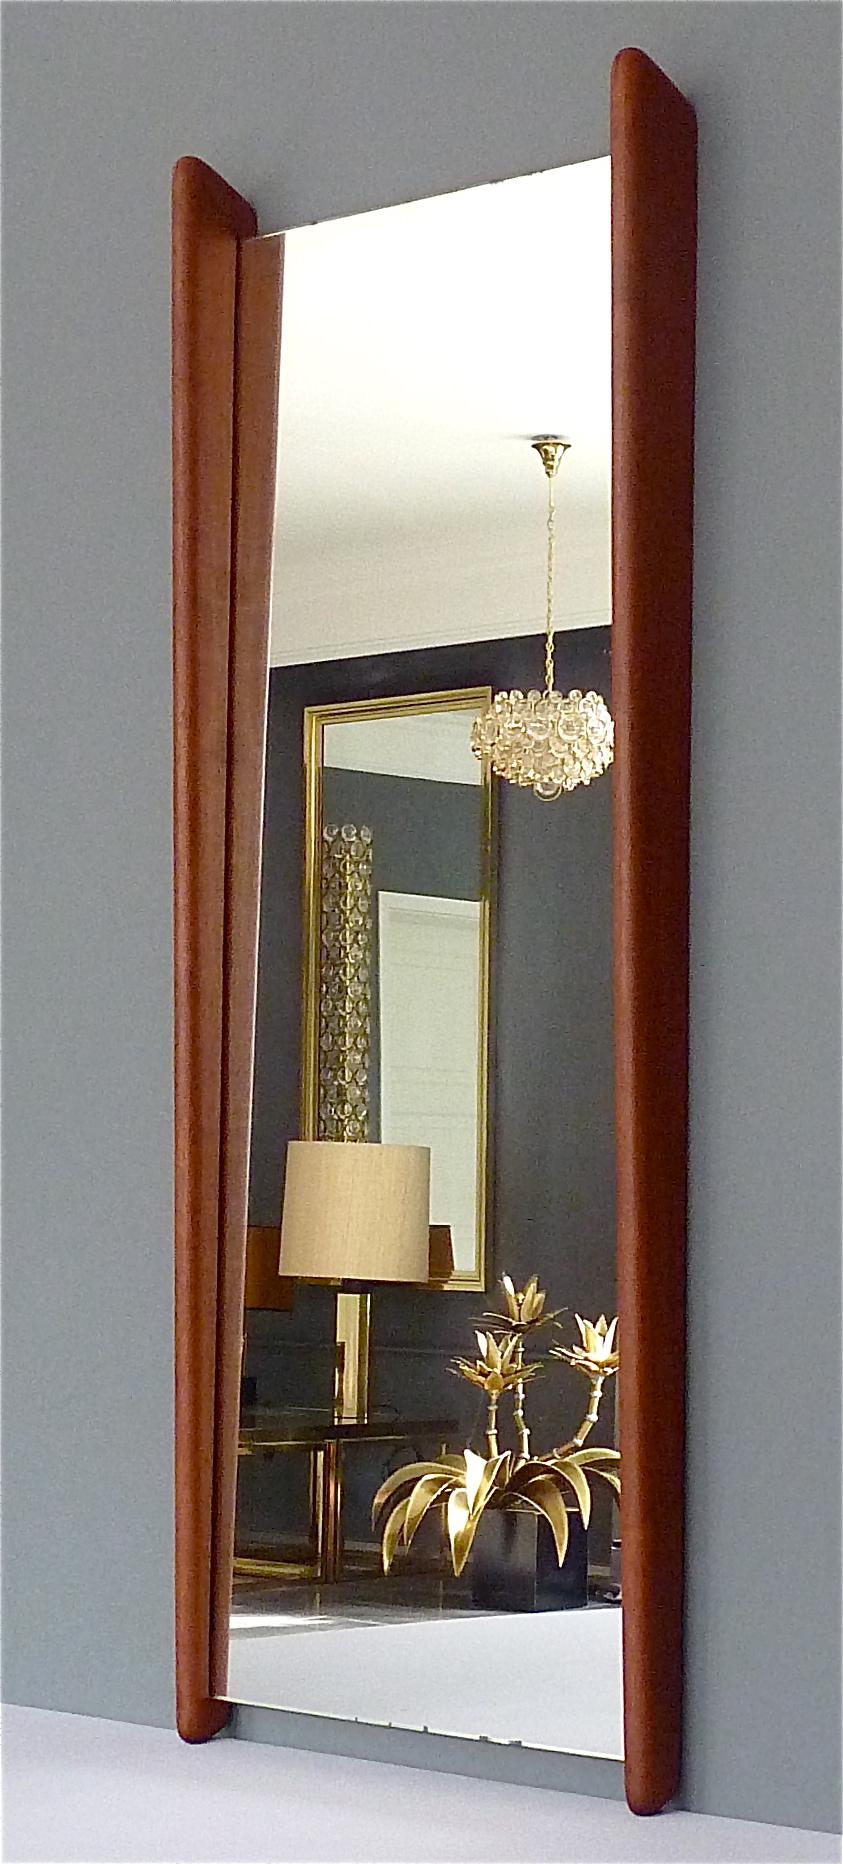 Ein großer und schöner Wandspiegel aus Teakholz von Uno & Östen Kristiansson für Luxus Vittsjö, siehe unter Luxus tak, Seite 118, Schweden um 1950-60. Organisch gerundeter, handgefertigter Teakholzrahmen mit originalem Spiegelglas, einige kleine